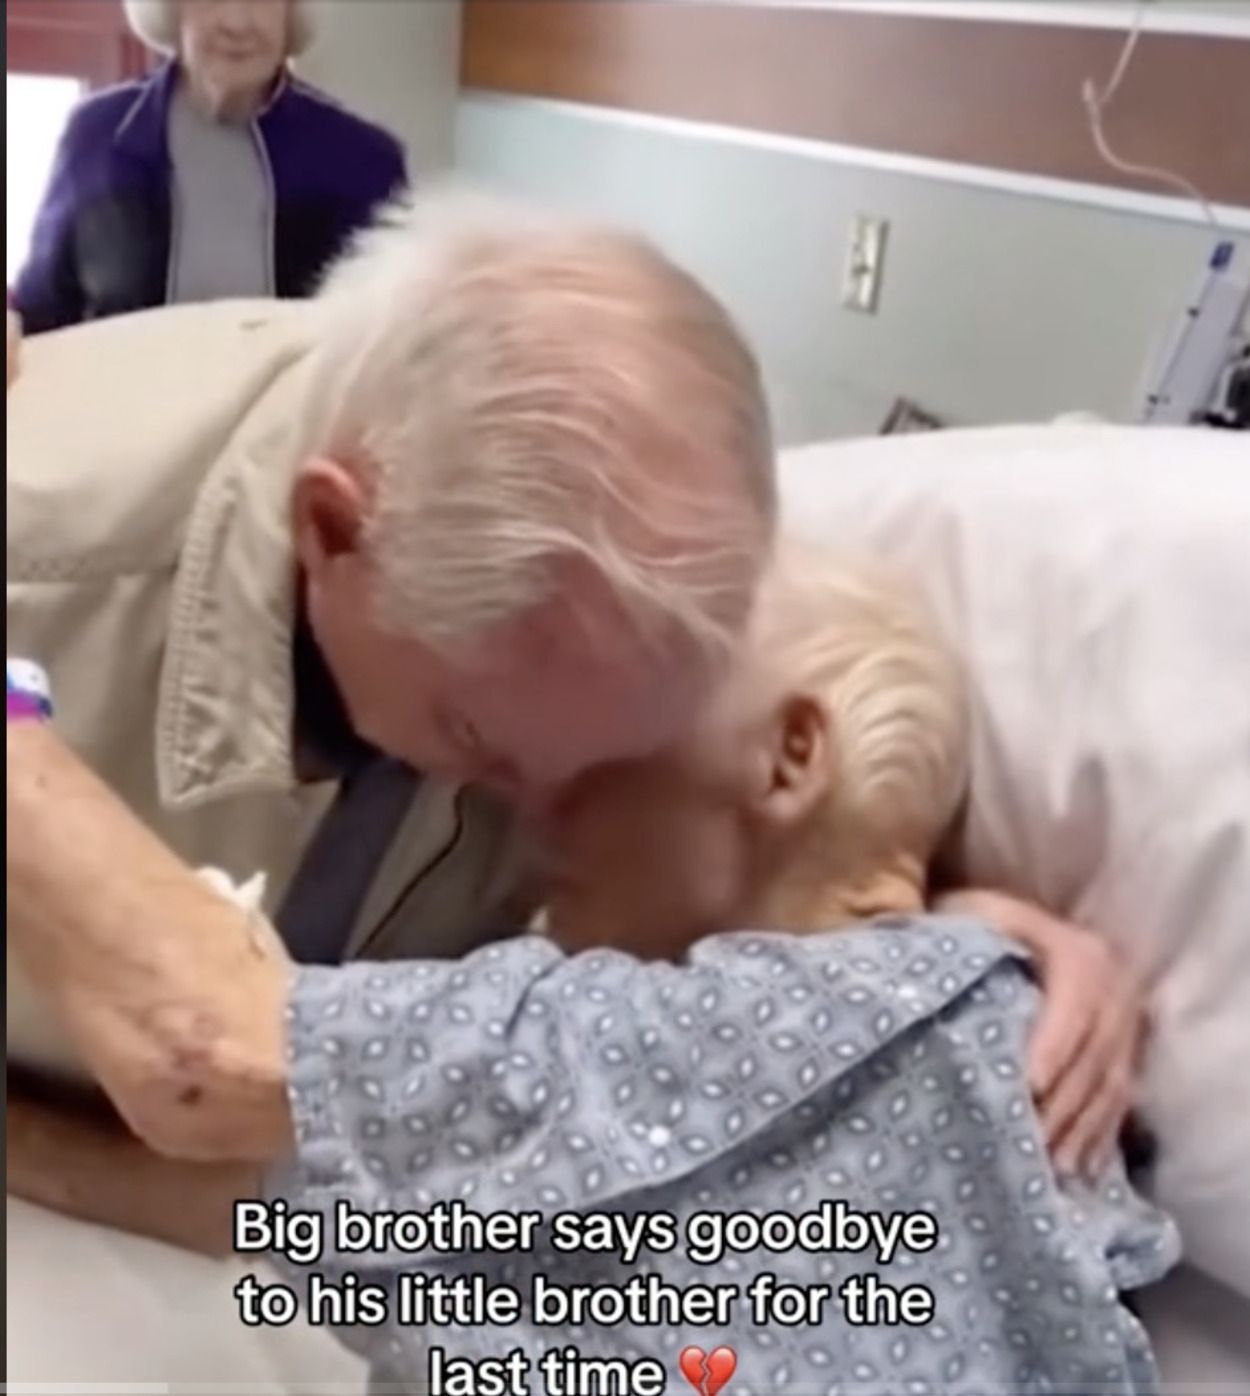 VÍDEO: El emotivo abrazo de despedida entre dos hermanos nonagenarios: "Te quiero"